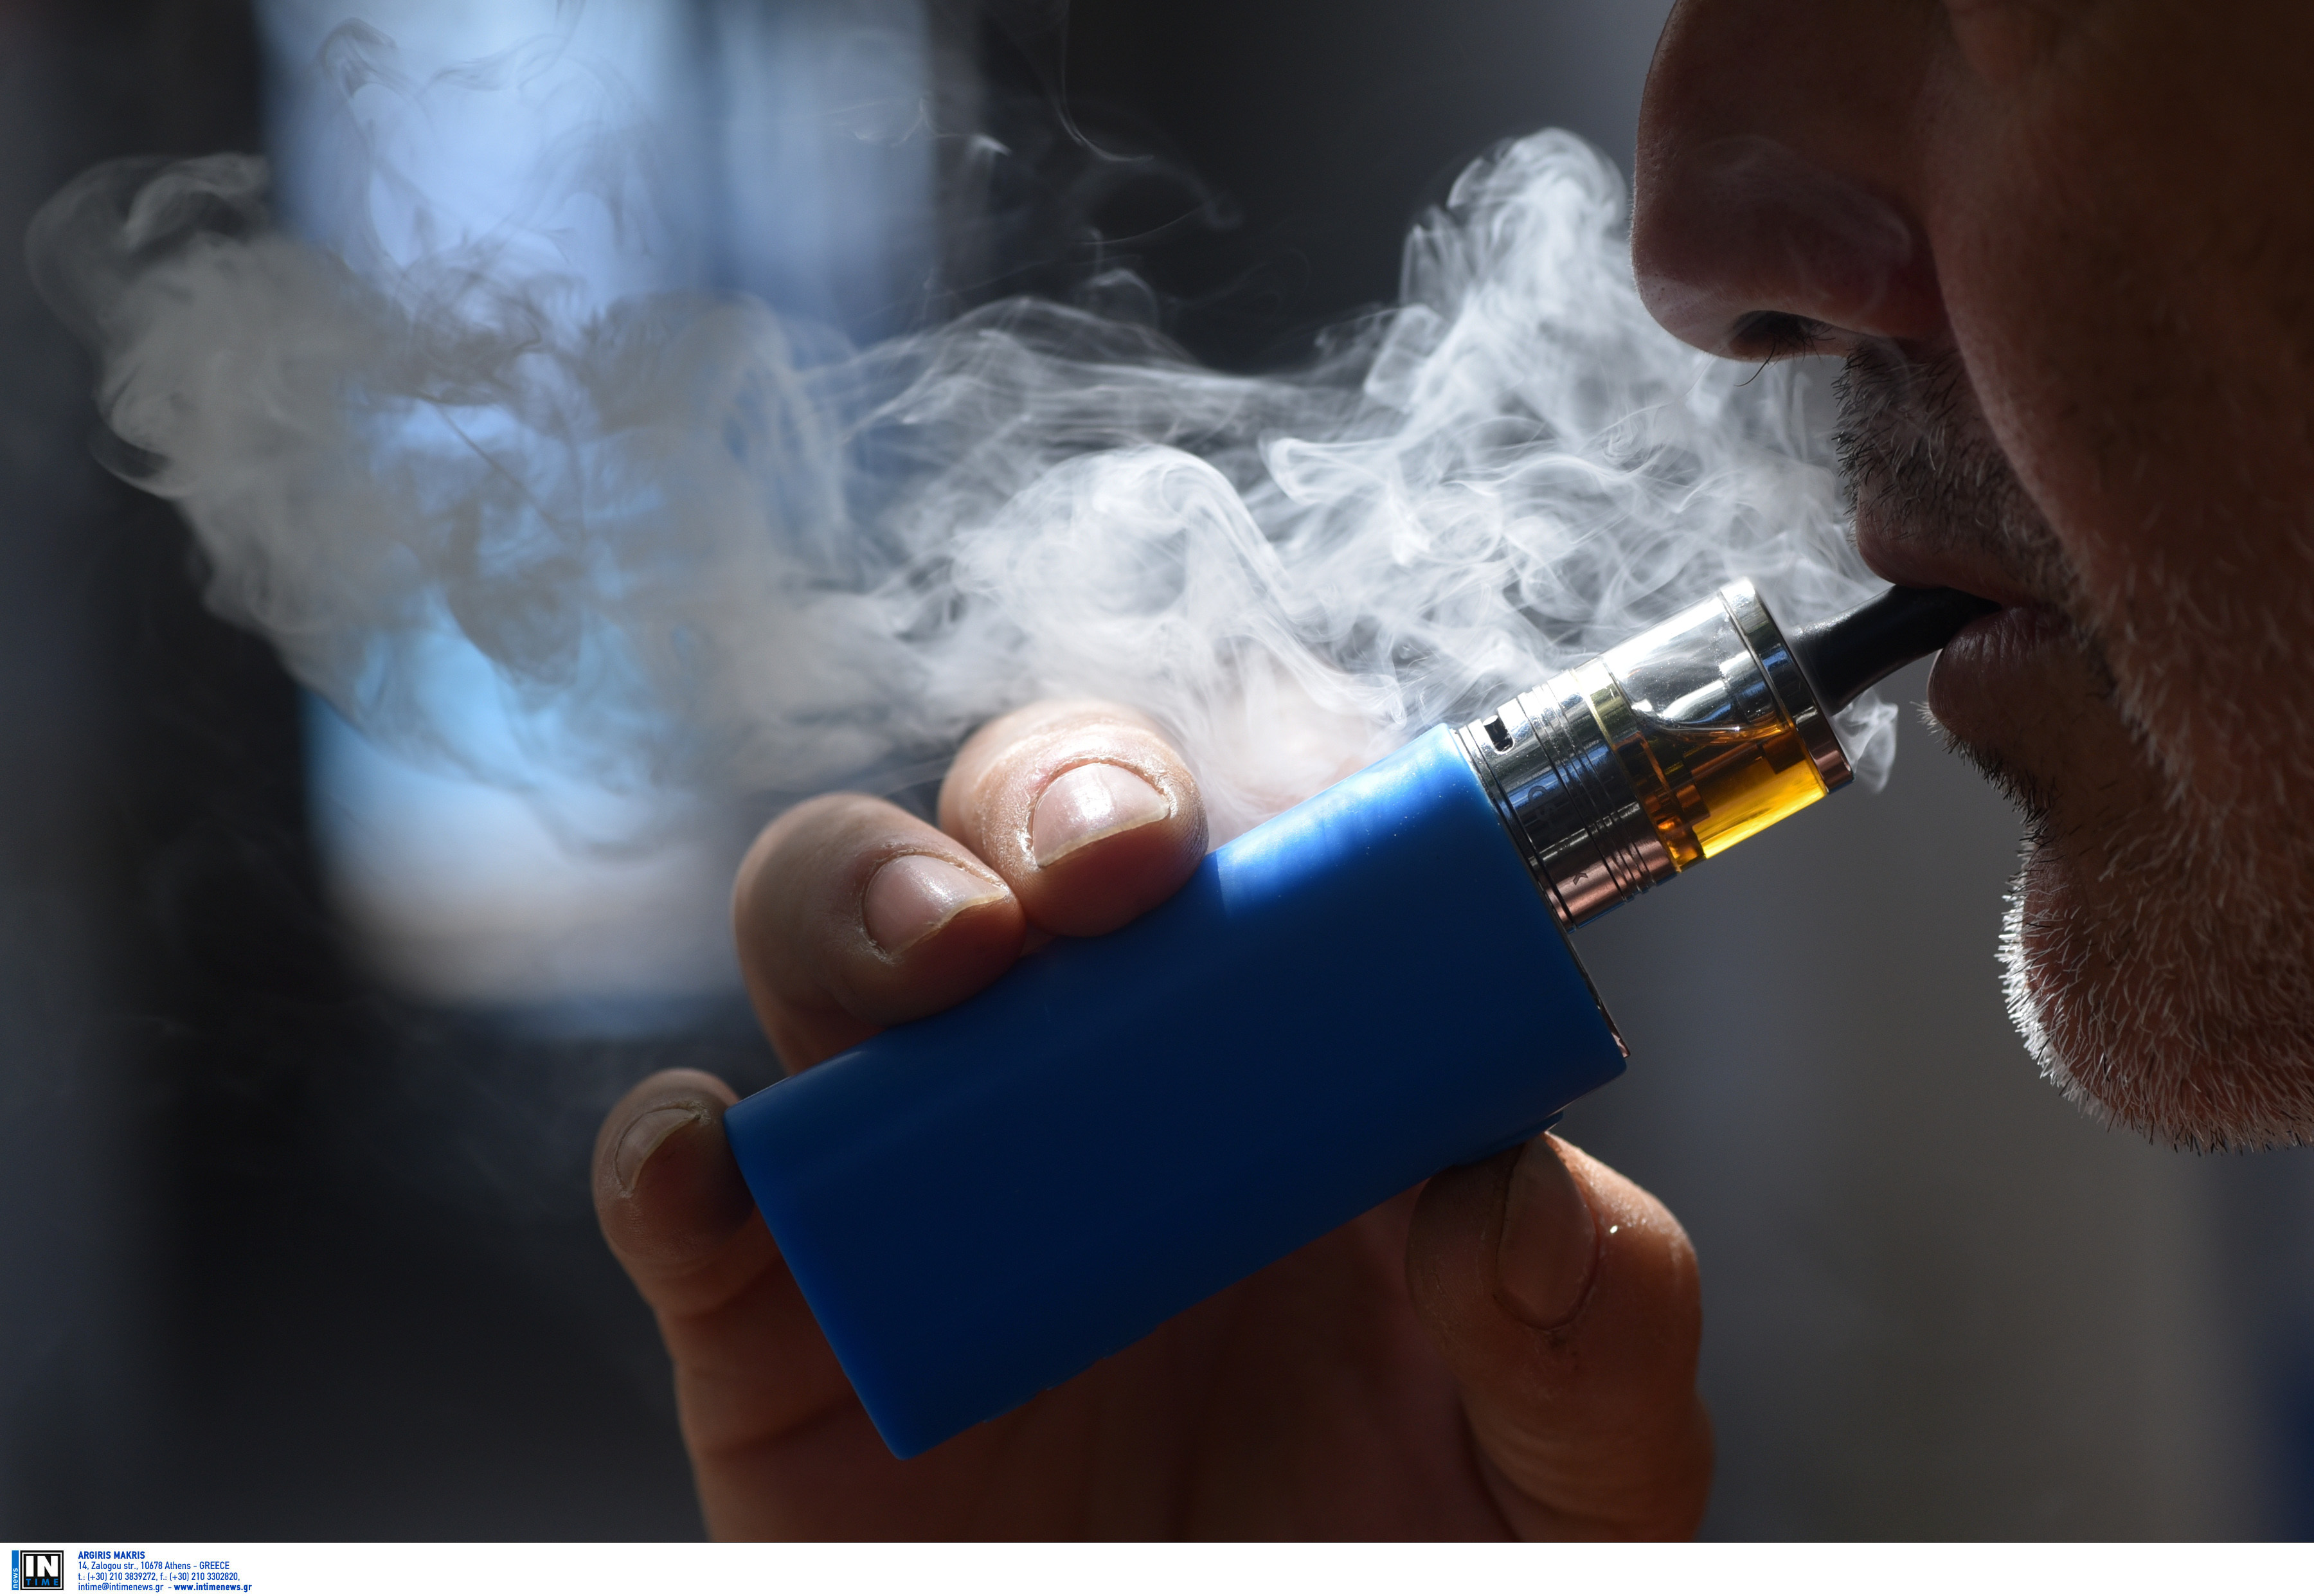 Ξυλαζίνη ή Tranq: Συναγερμός στη Βρετανία για το ηρεμιστικό που βρέθηκε σε υγρά ηλεκτρονικών τσιγάρων και χάπια